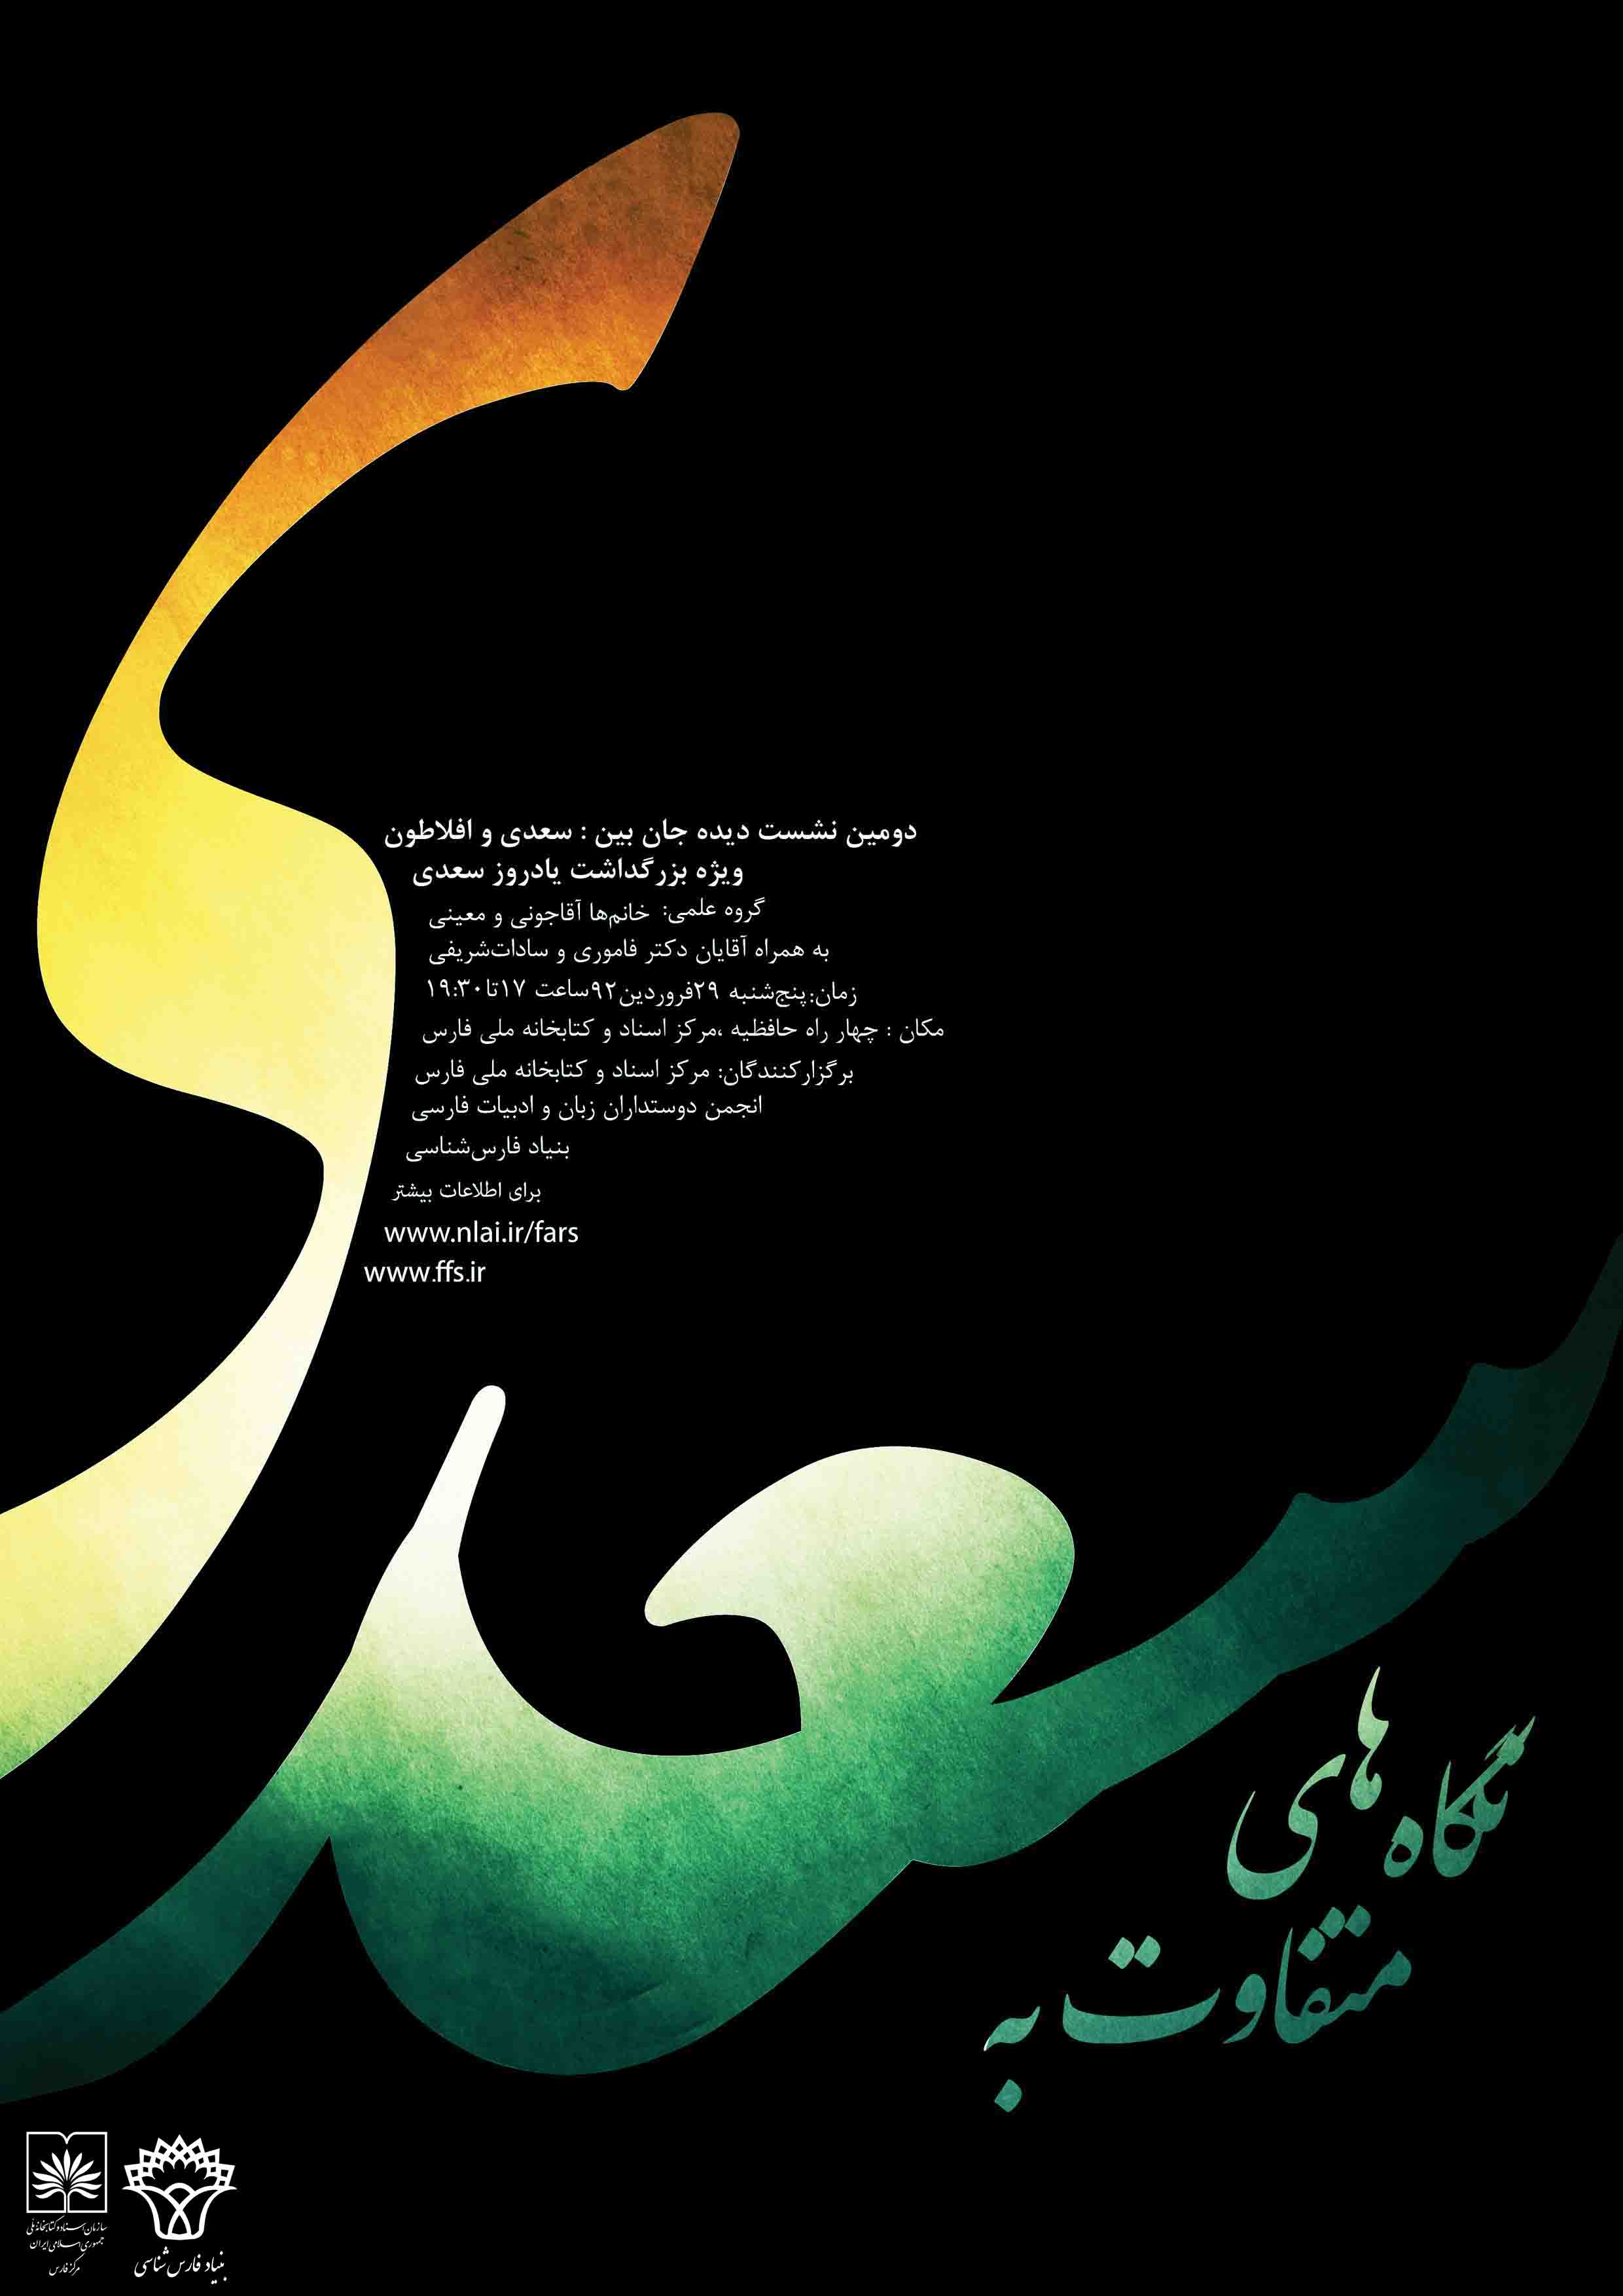 نخستین برنامه مرکز فارس به مناسبت یادروز سعدی پنجشنبه 29 فروردین ماه برگزار می گردد.